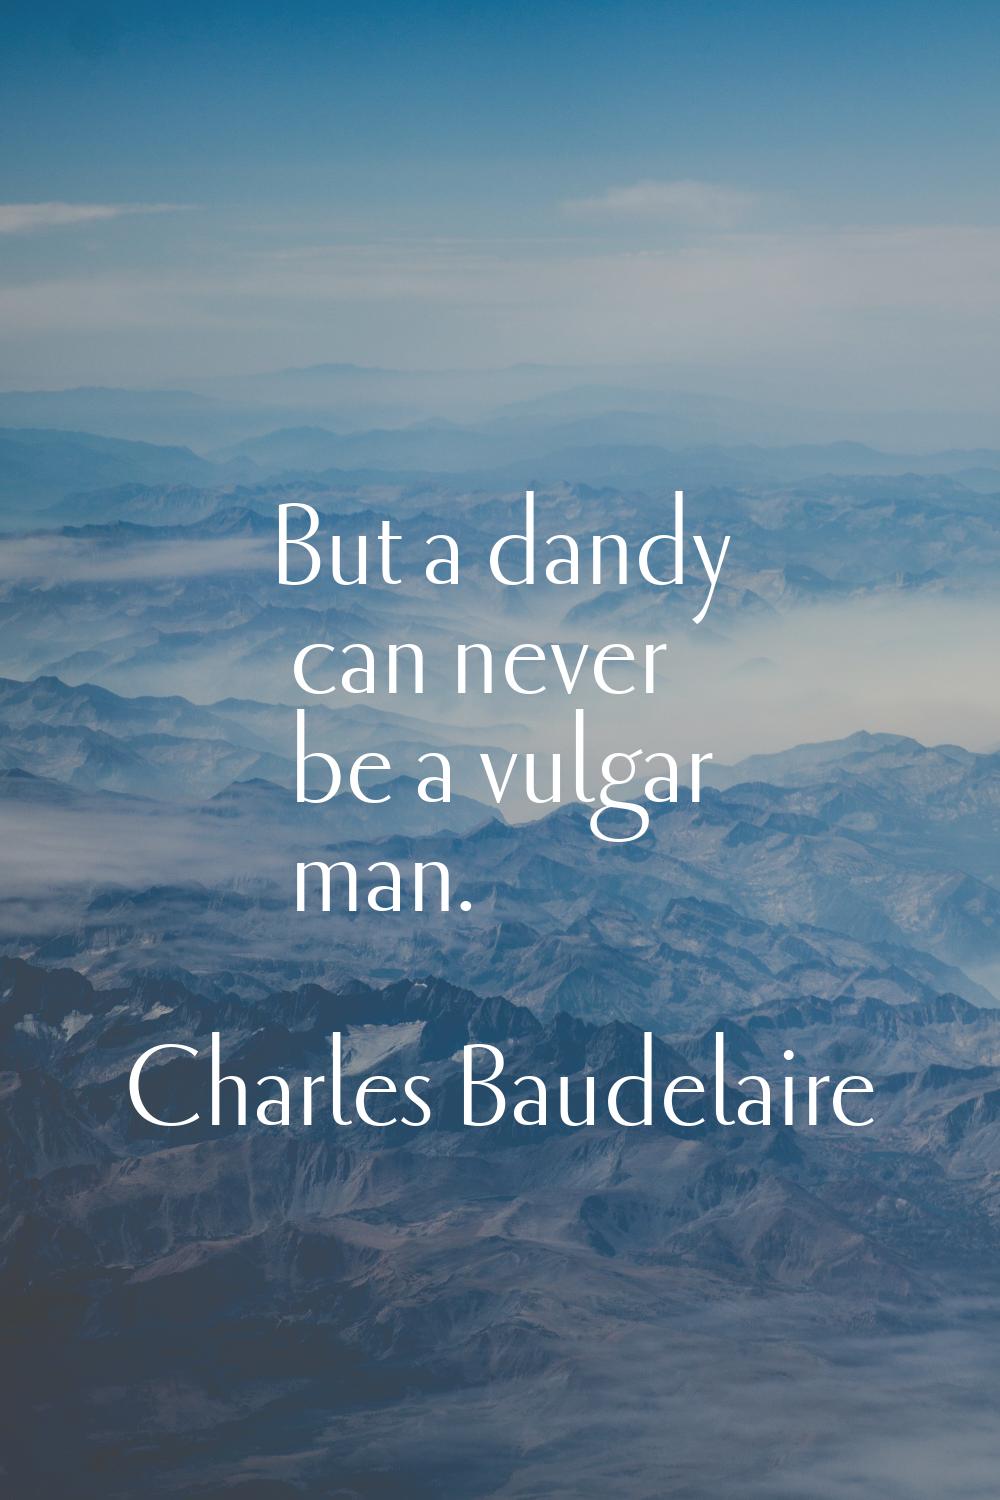 But a dandy can never be a vulgar man.